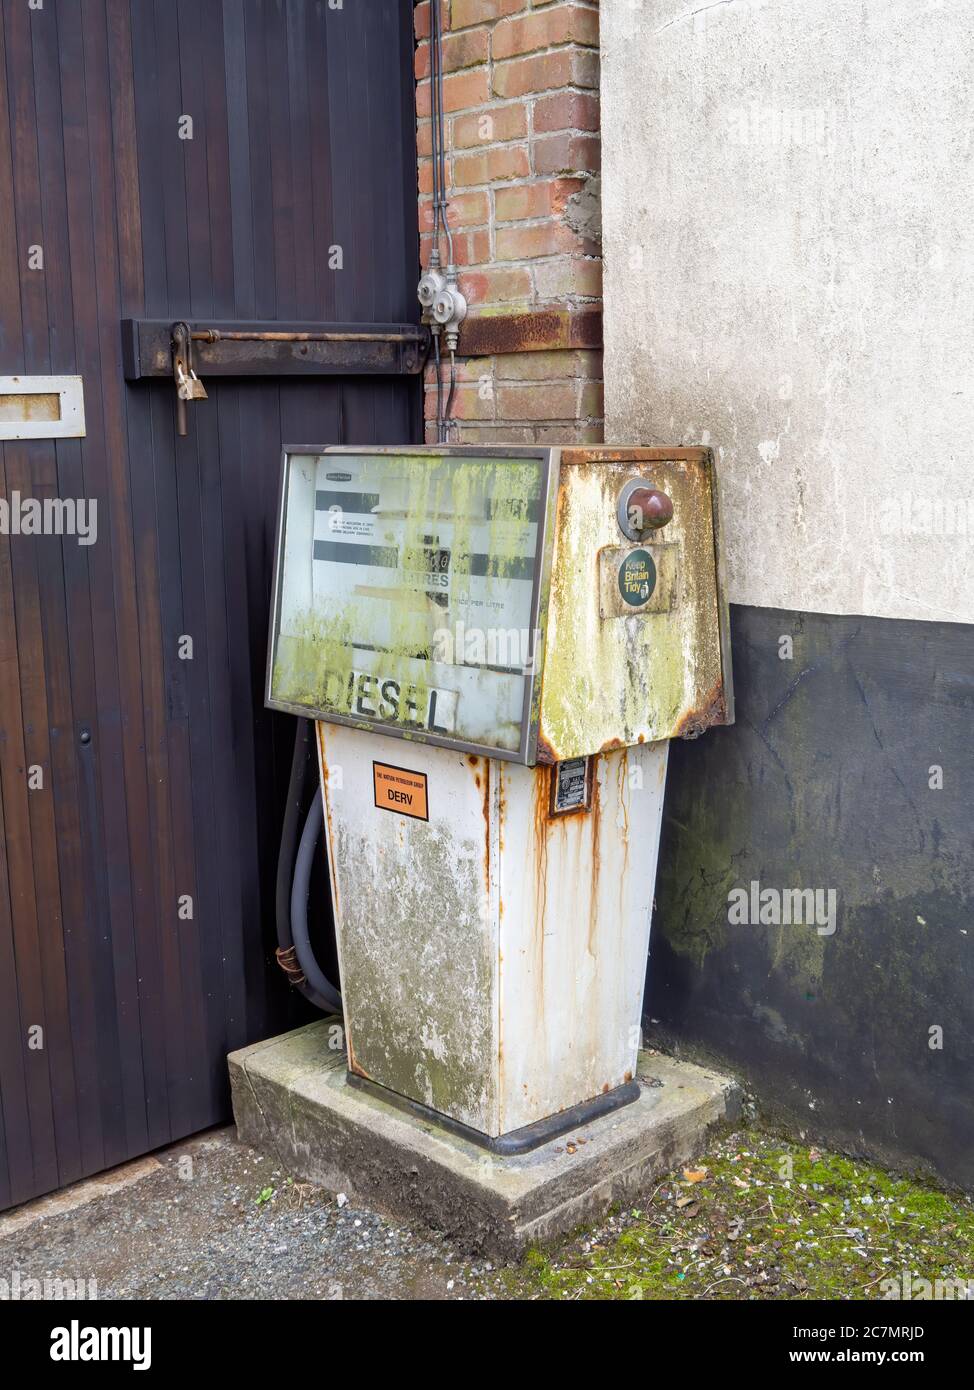 HOLSWORTHY, DEVON, UK - JULY 16 2020: An old diesel pump distributor rusting. Stock Photo